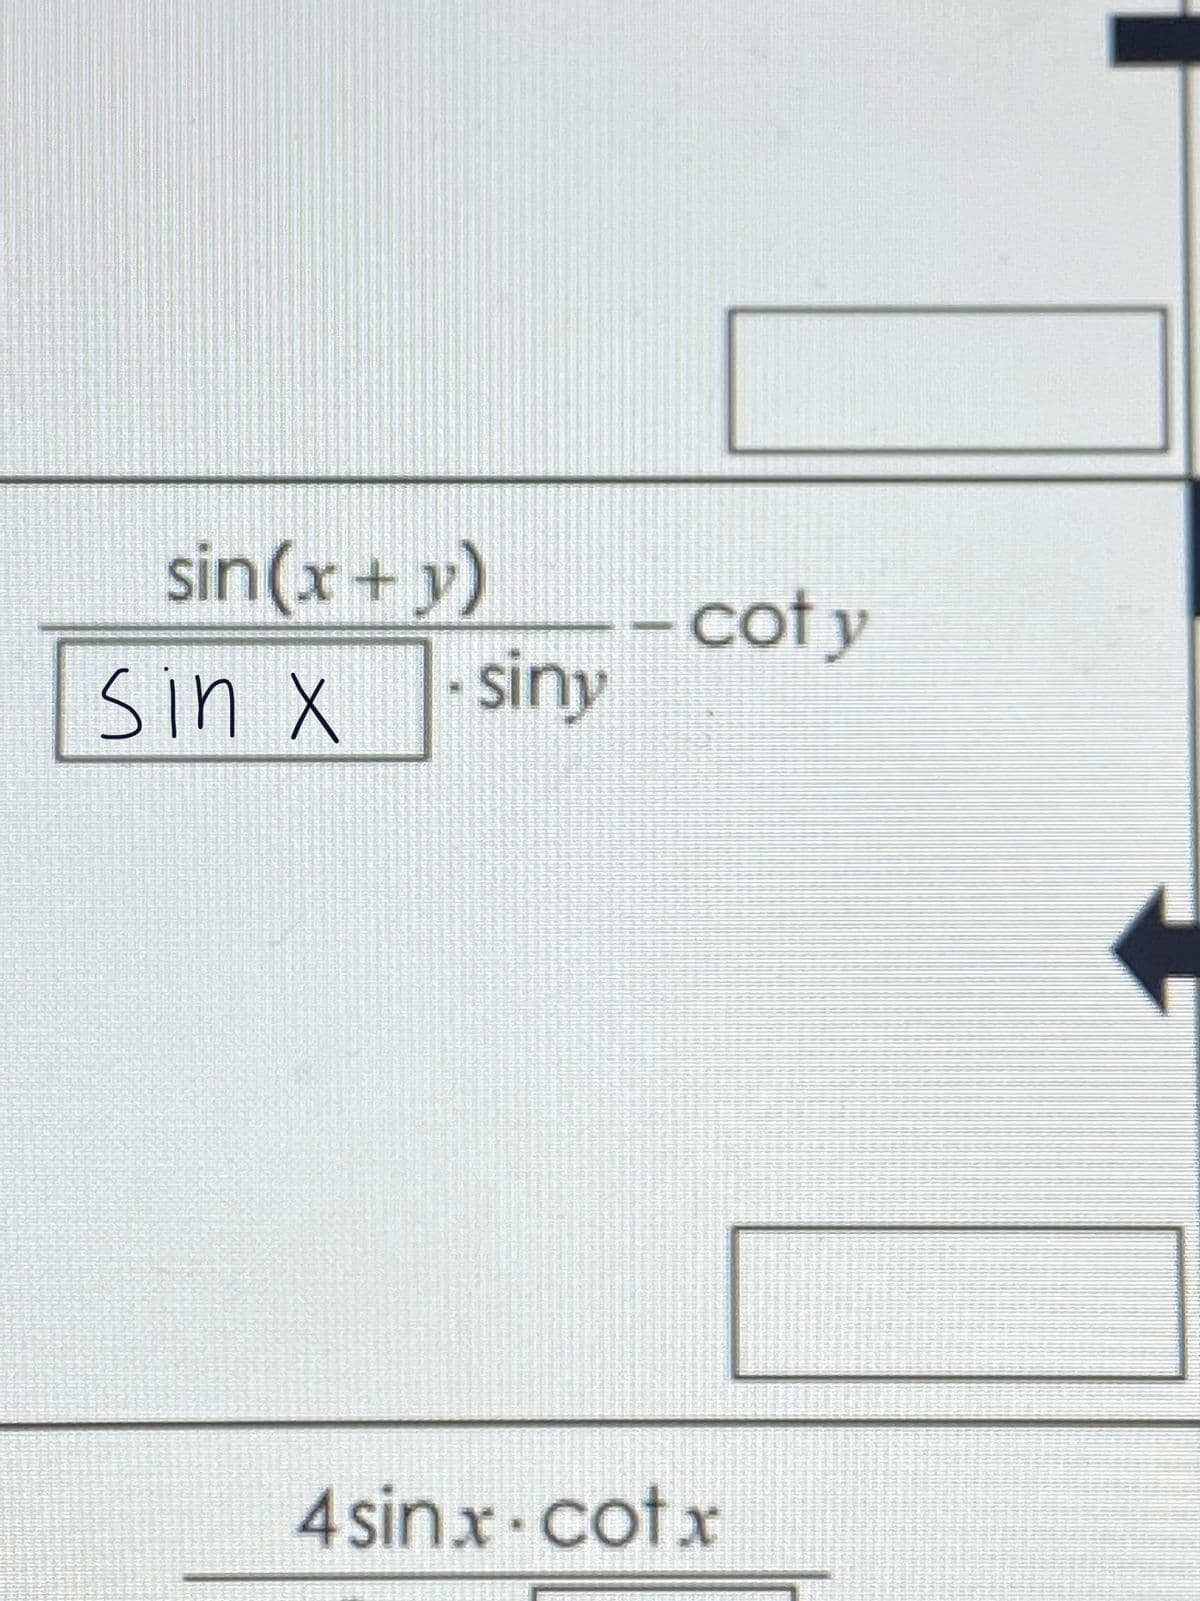 sin(x+ y)
coty
siny
sin X
4 sinx.cotx
